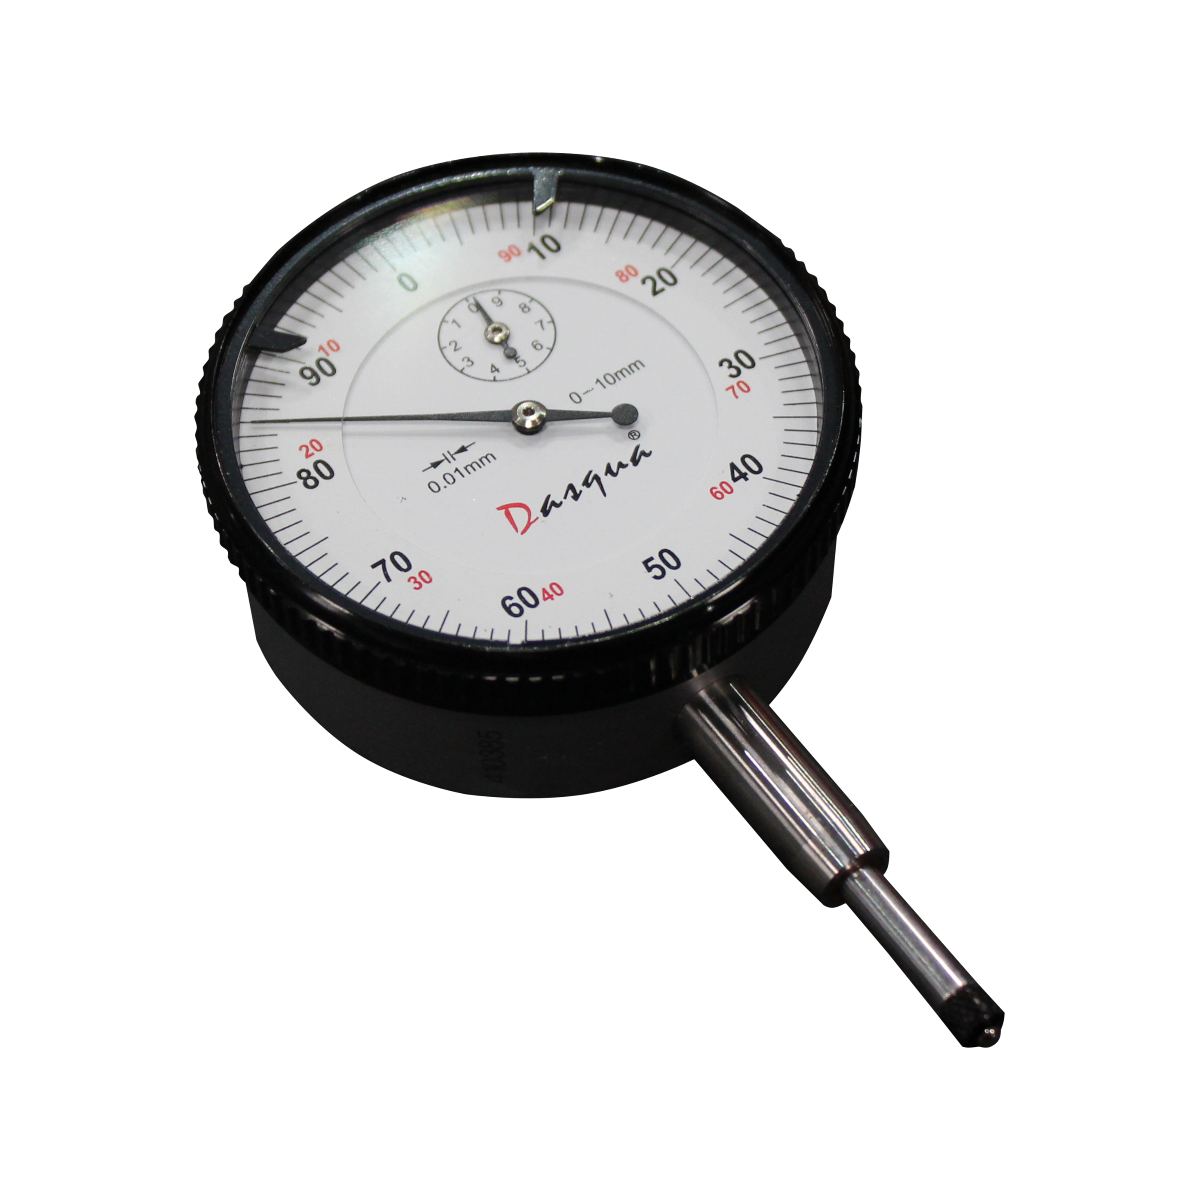 Comparateur de précision KM 1000 S - Echelle de mesure 1 mm - Rotation de  l'aiguille 0,2 mm - avec protection contre les chocs